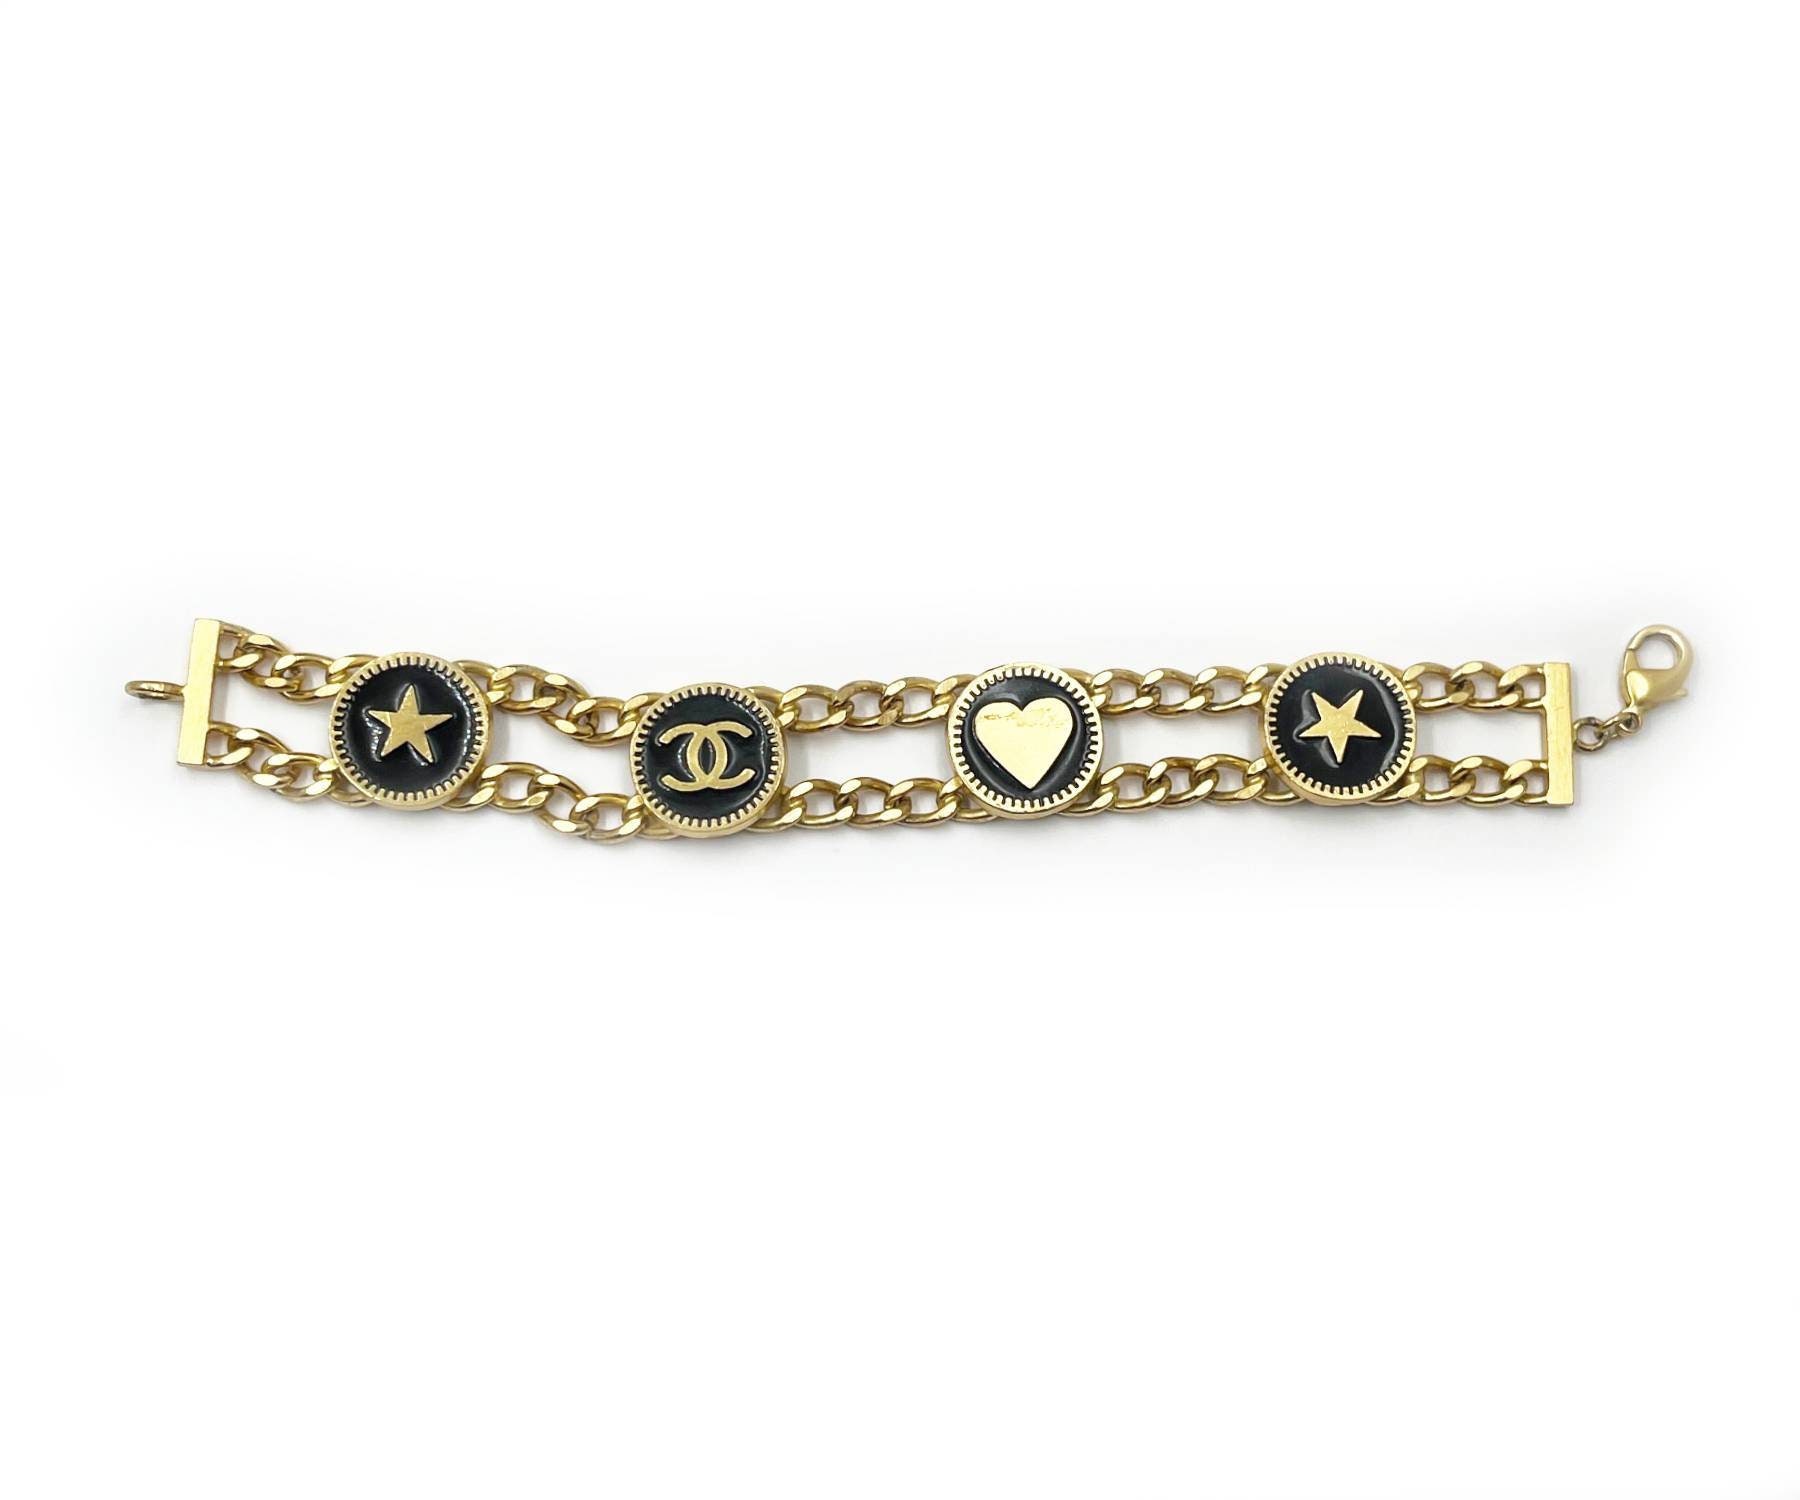 Chanel Chanel Coco Mark Earrings Rhinestone Cross Gold L21b Women's